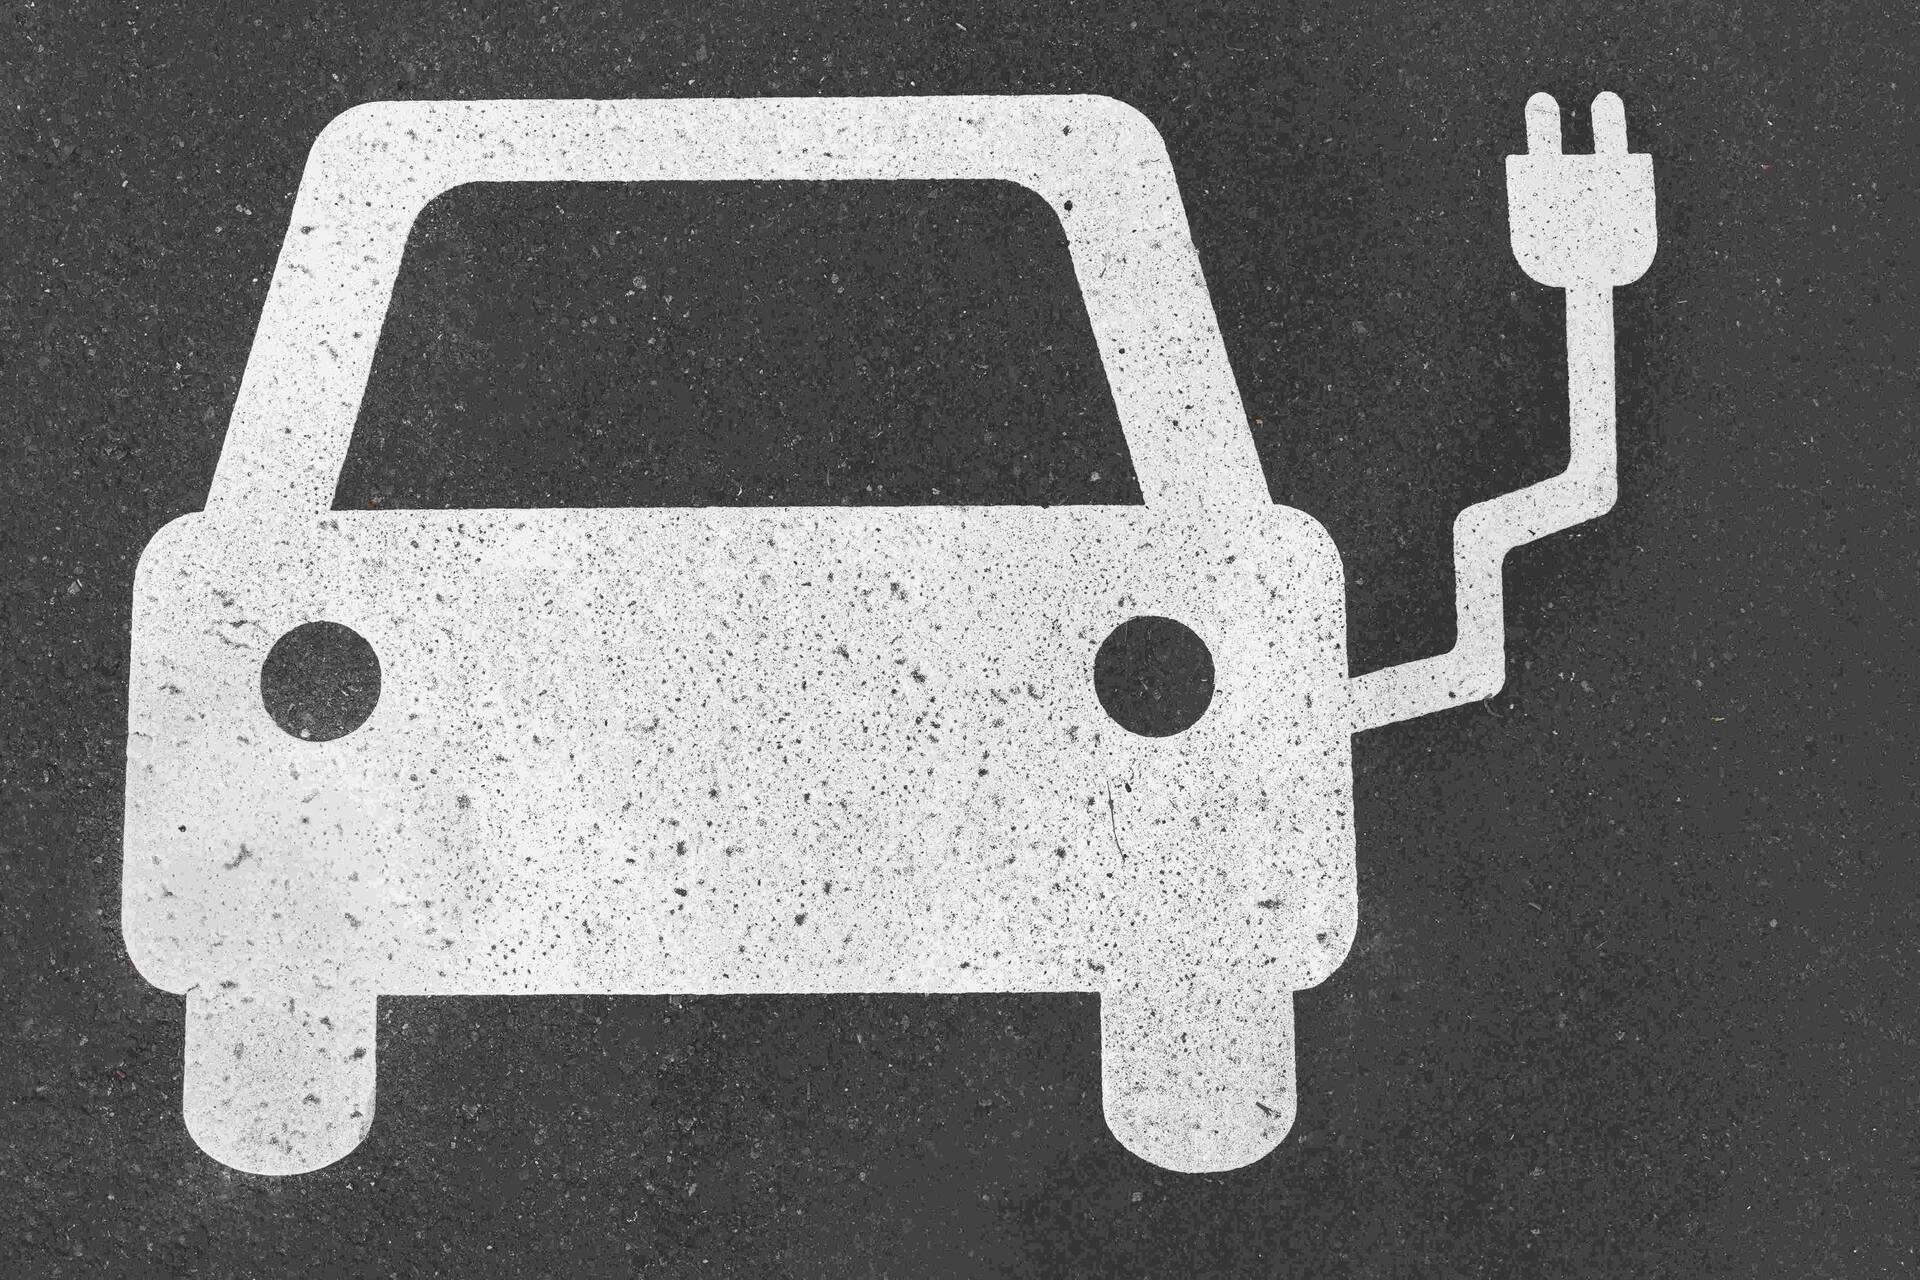 Ηλεκτρική κινητικότητα: η ηλεκτρική κινητικότητα αποτελείται από οχήματα μπαταρίας, υδρογόνου και κυψελών καυσίμου και οχήματα που τροφοδοτούνται από συνθετικά καύσιμα